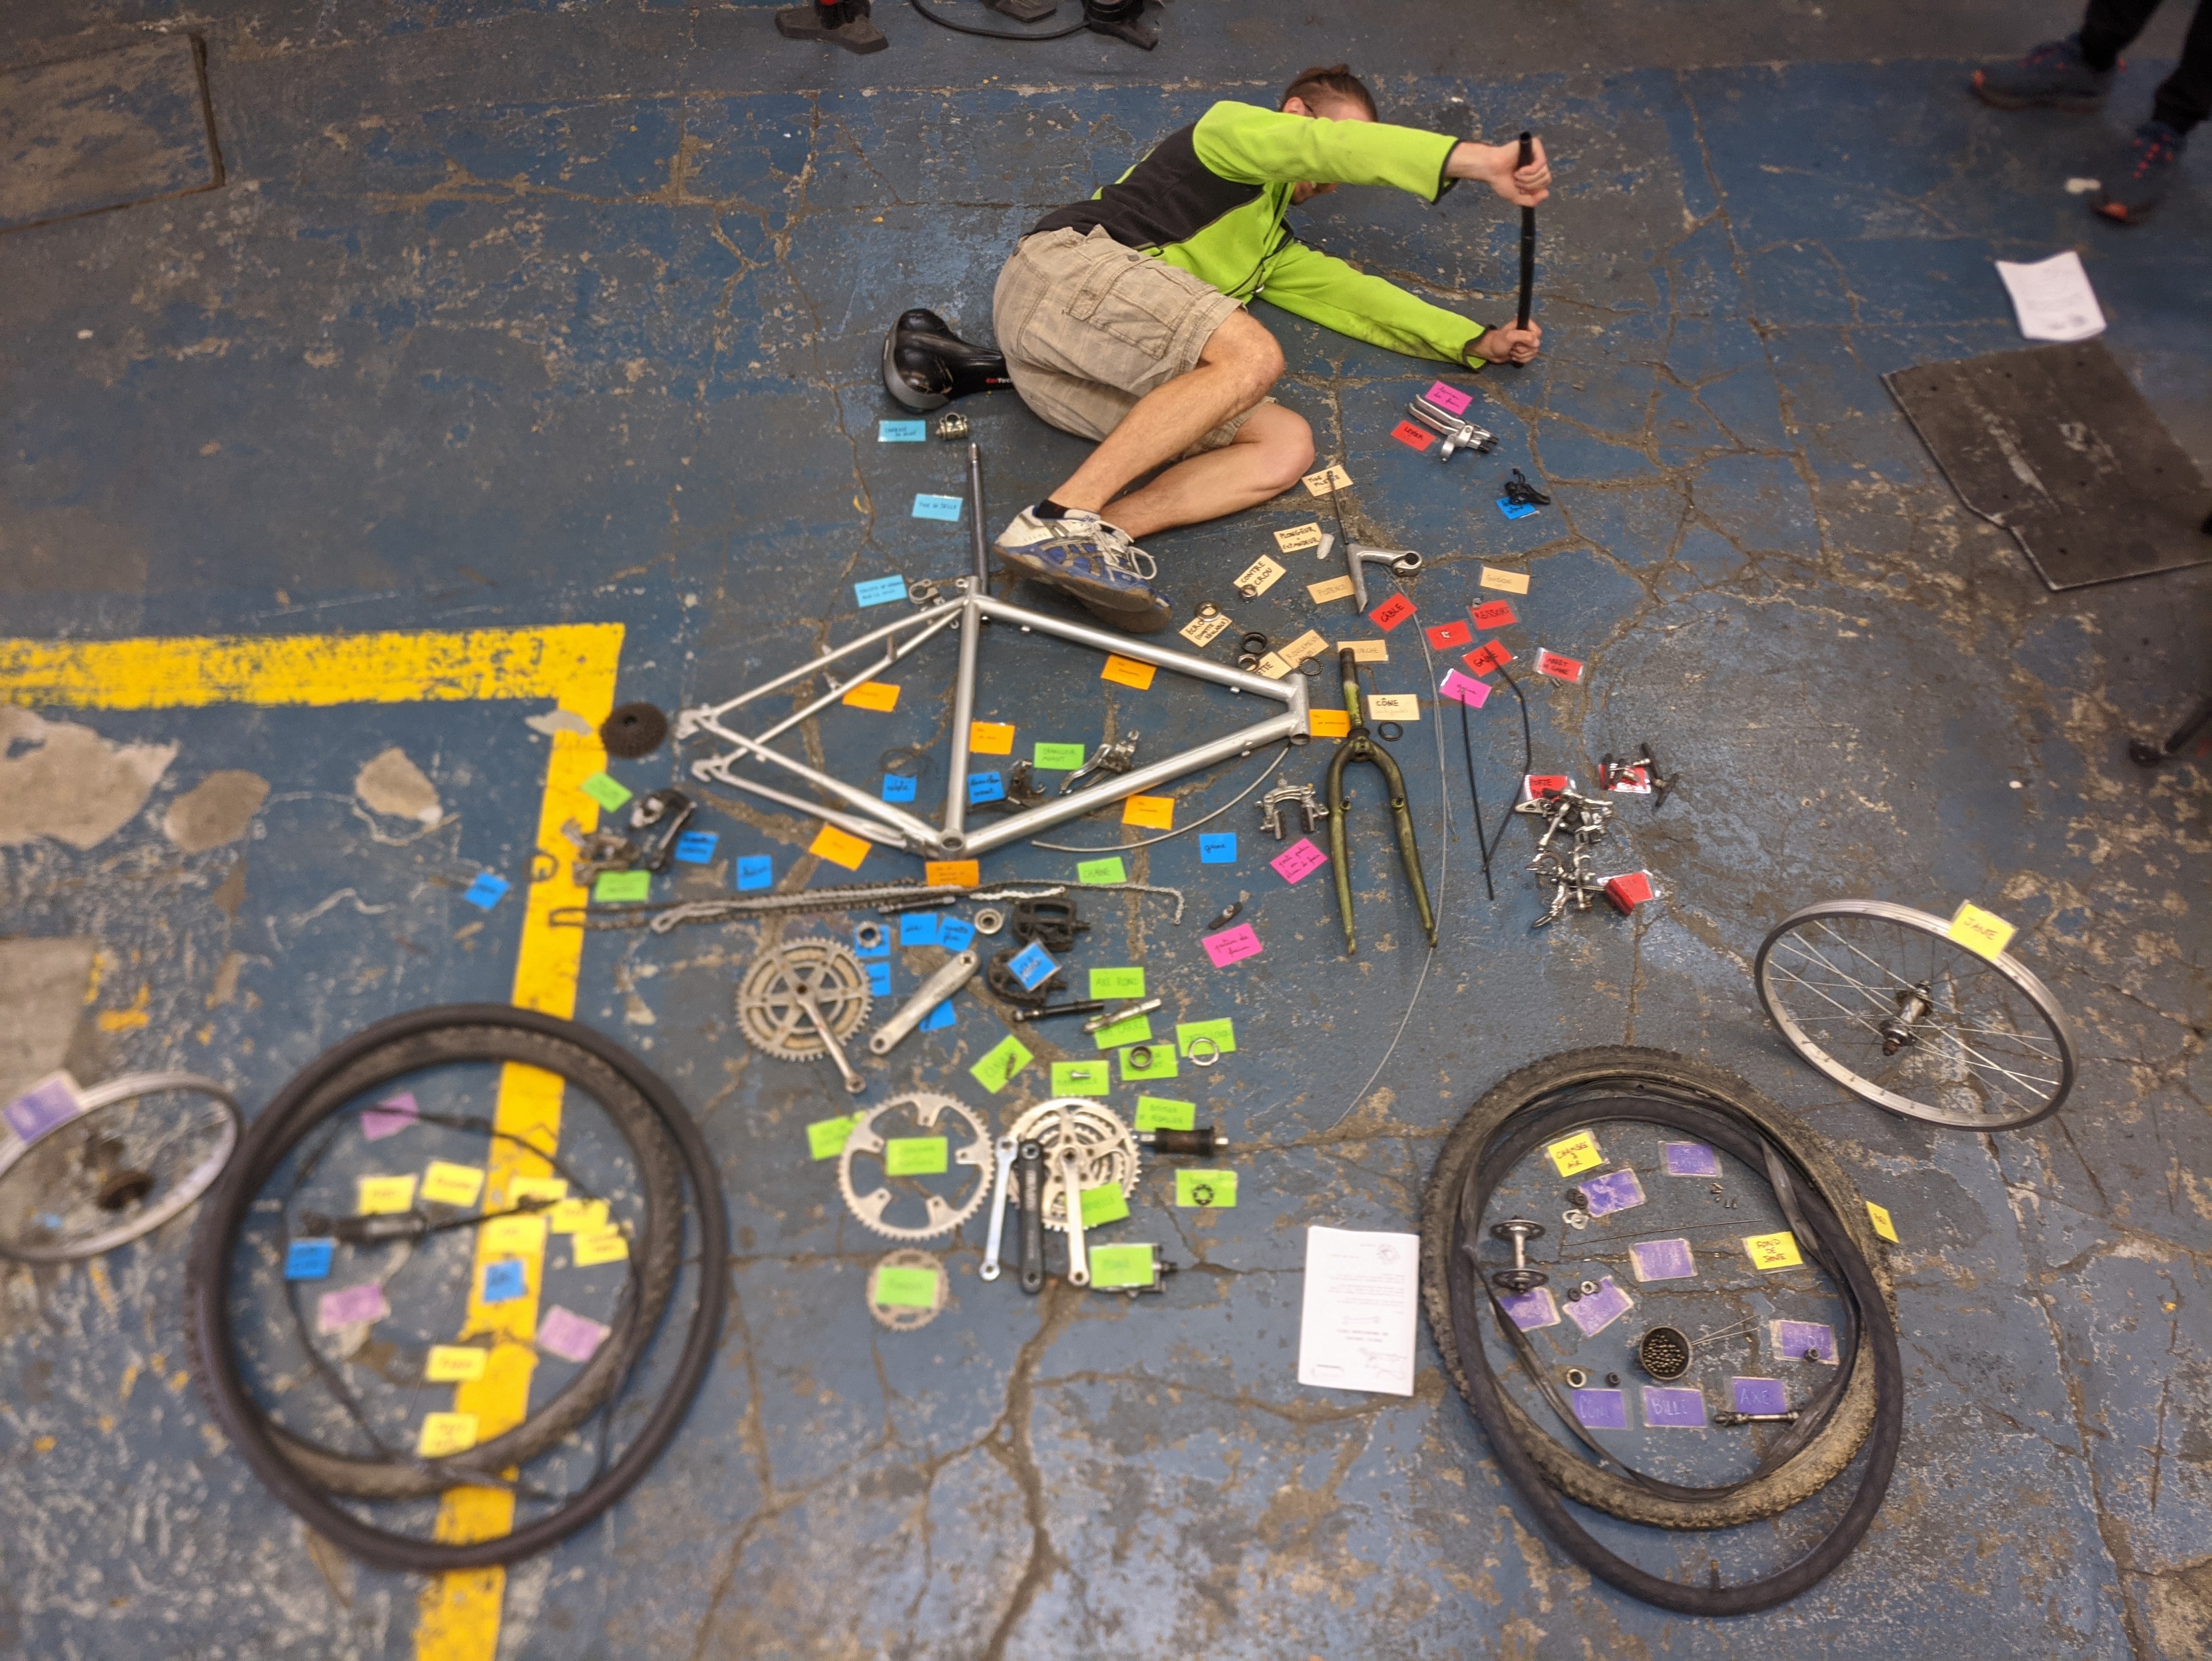 Éclaté de vélo au sol avec pièces de vélos et étiquettes. Une personne est couchée sur le côté, faisant semblant de rouler.